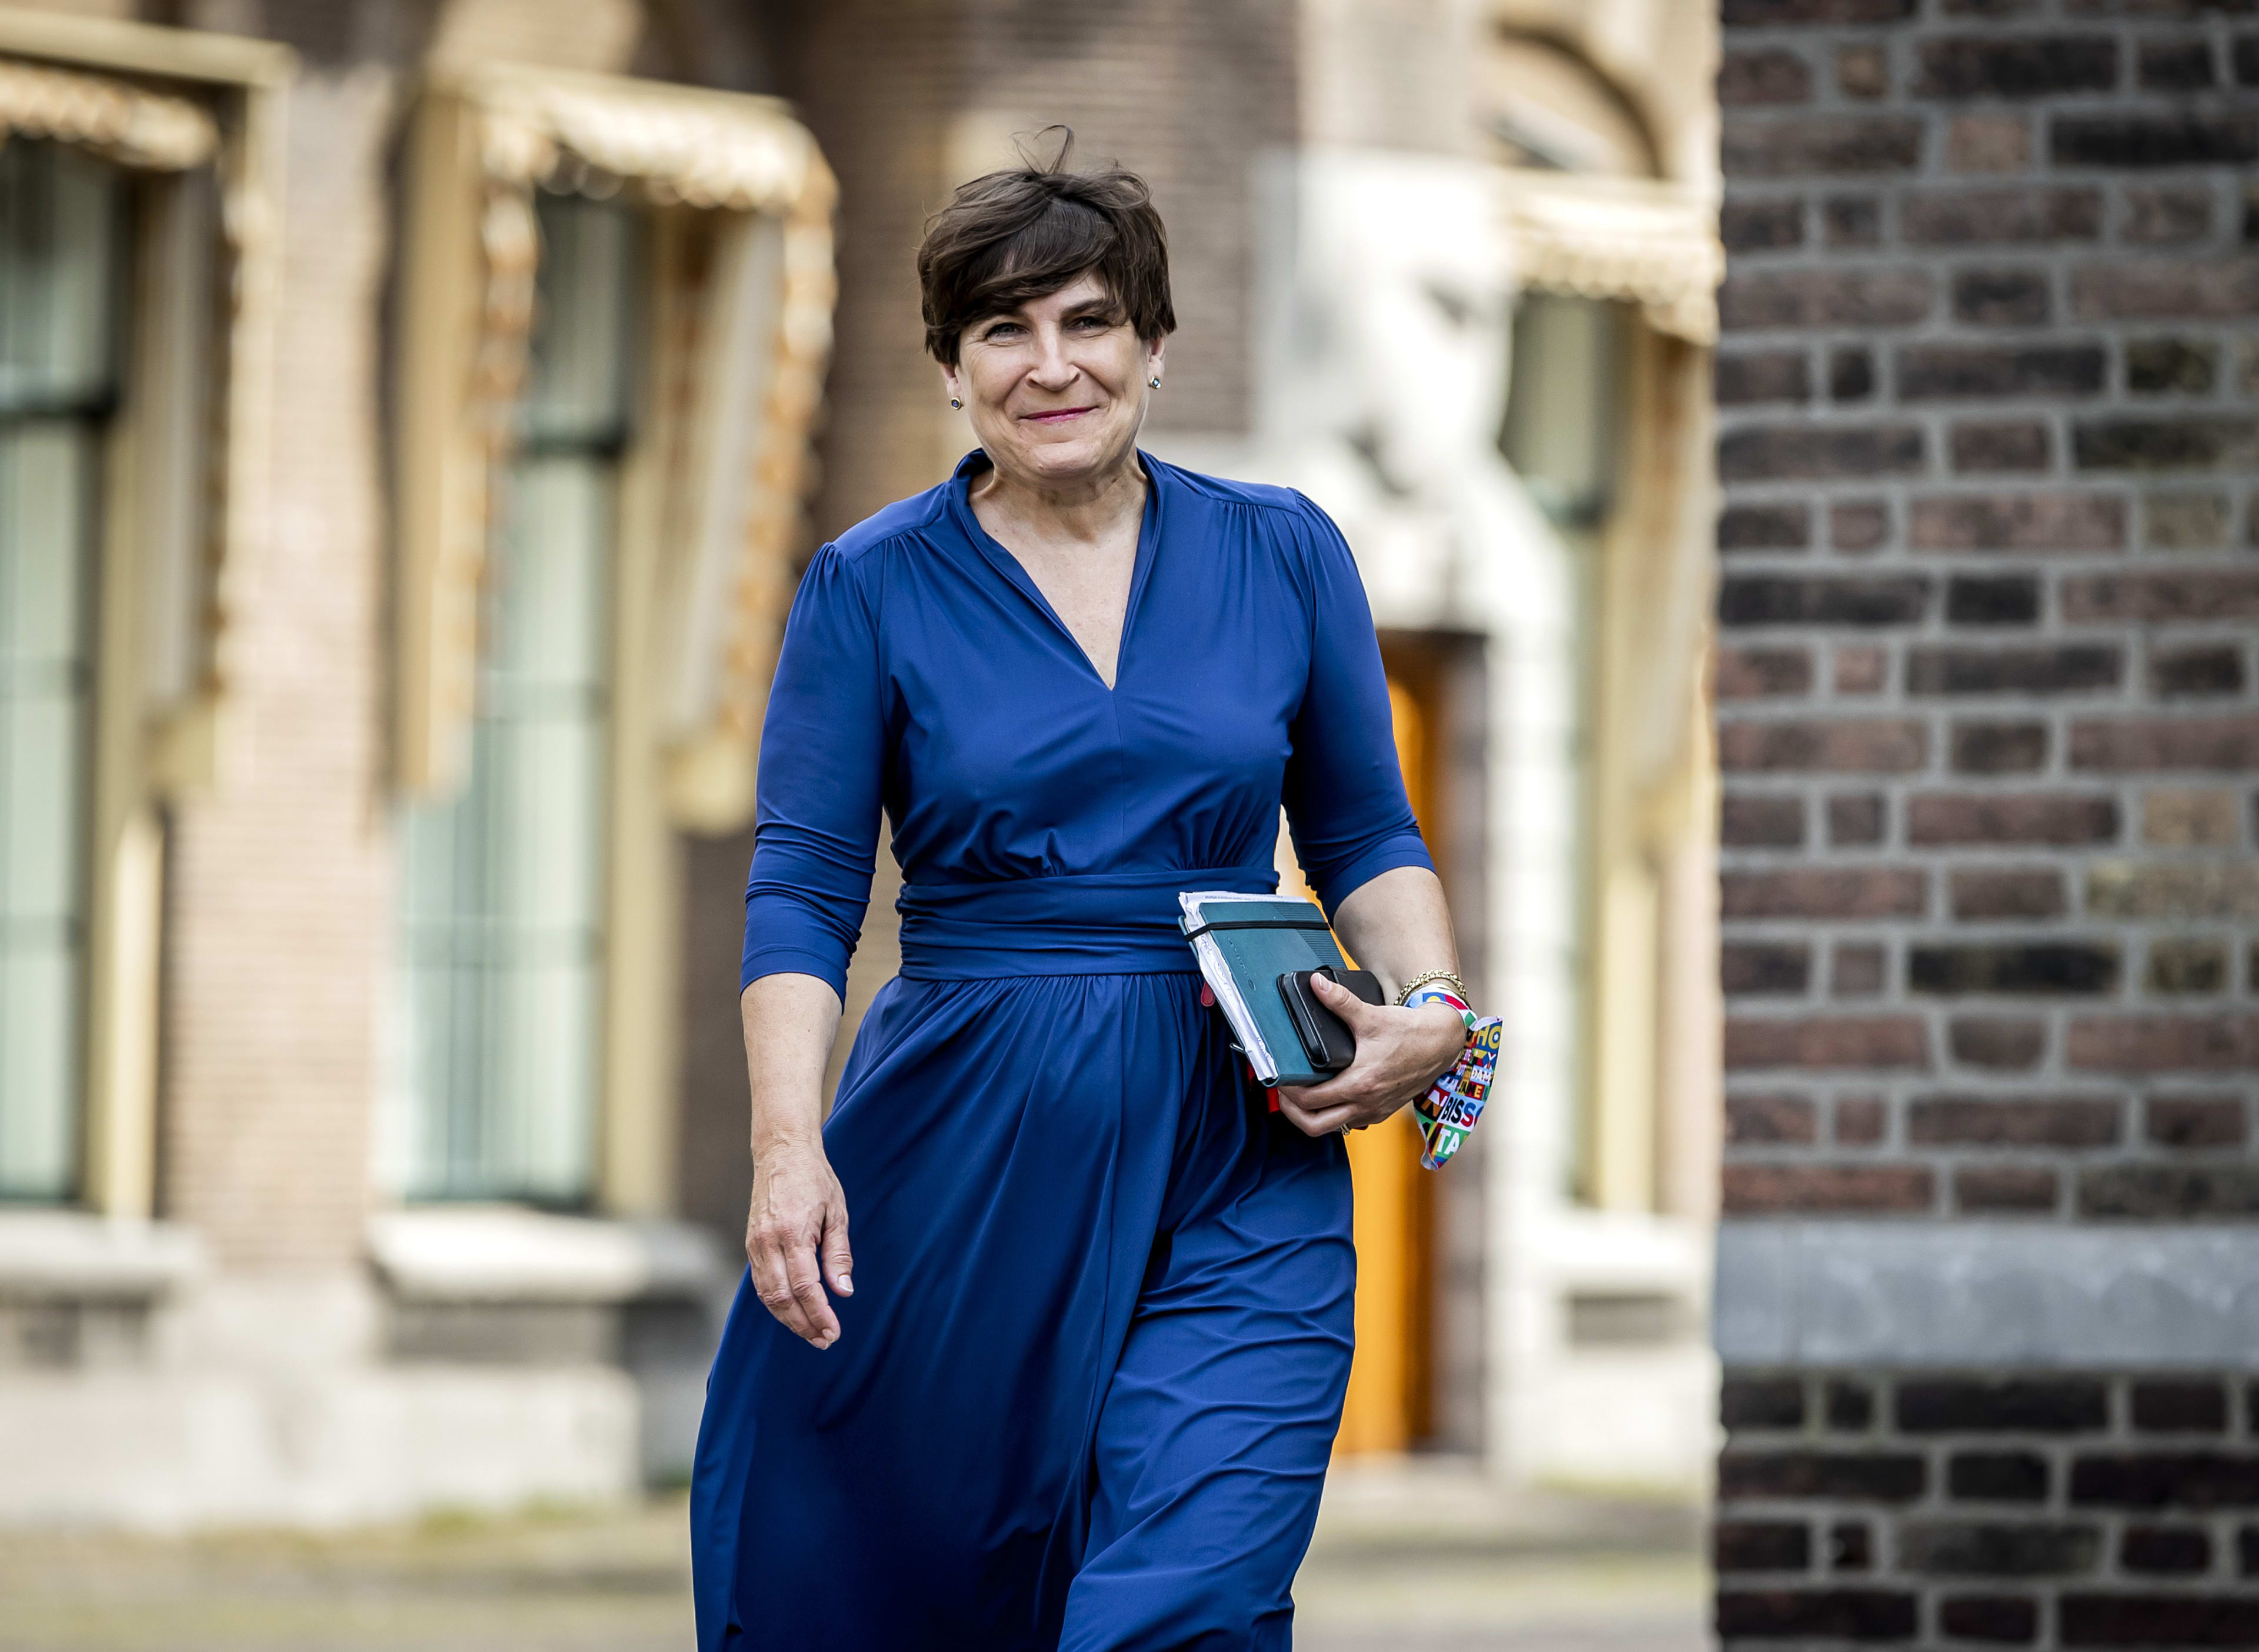 Lilianne Ploumen stopt als partijleider en kamerlid van de PvdA: 'Past niet bij me'